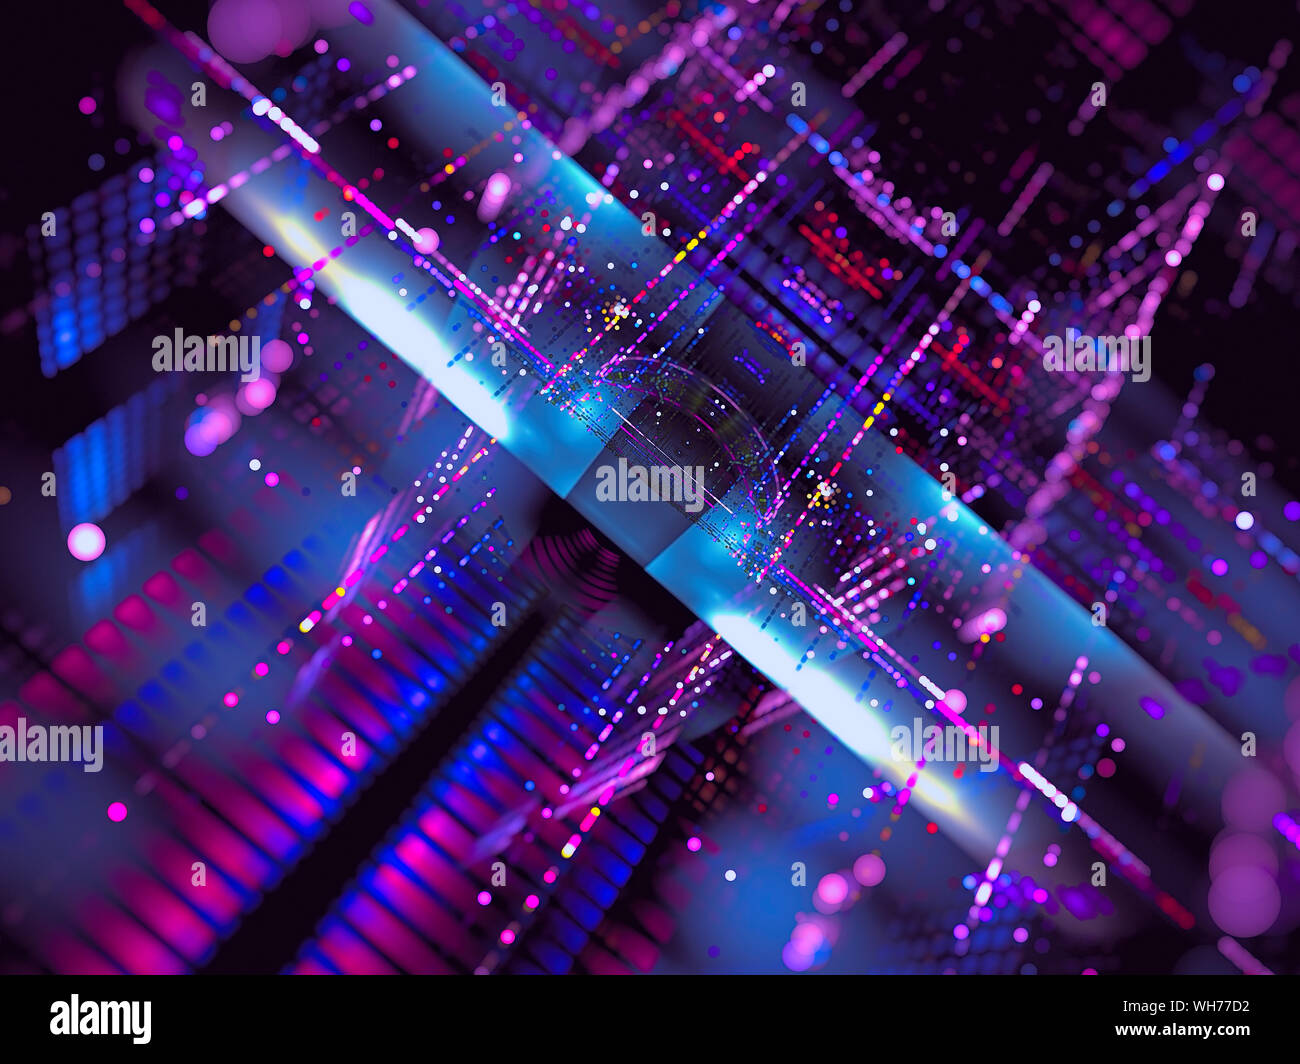 Style Tech flou - abstract fractal image générée numériquement Banque D'Images